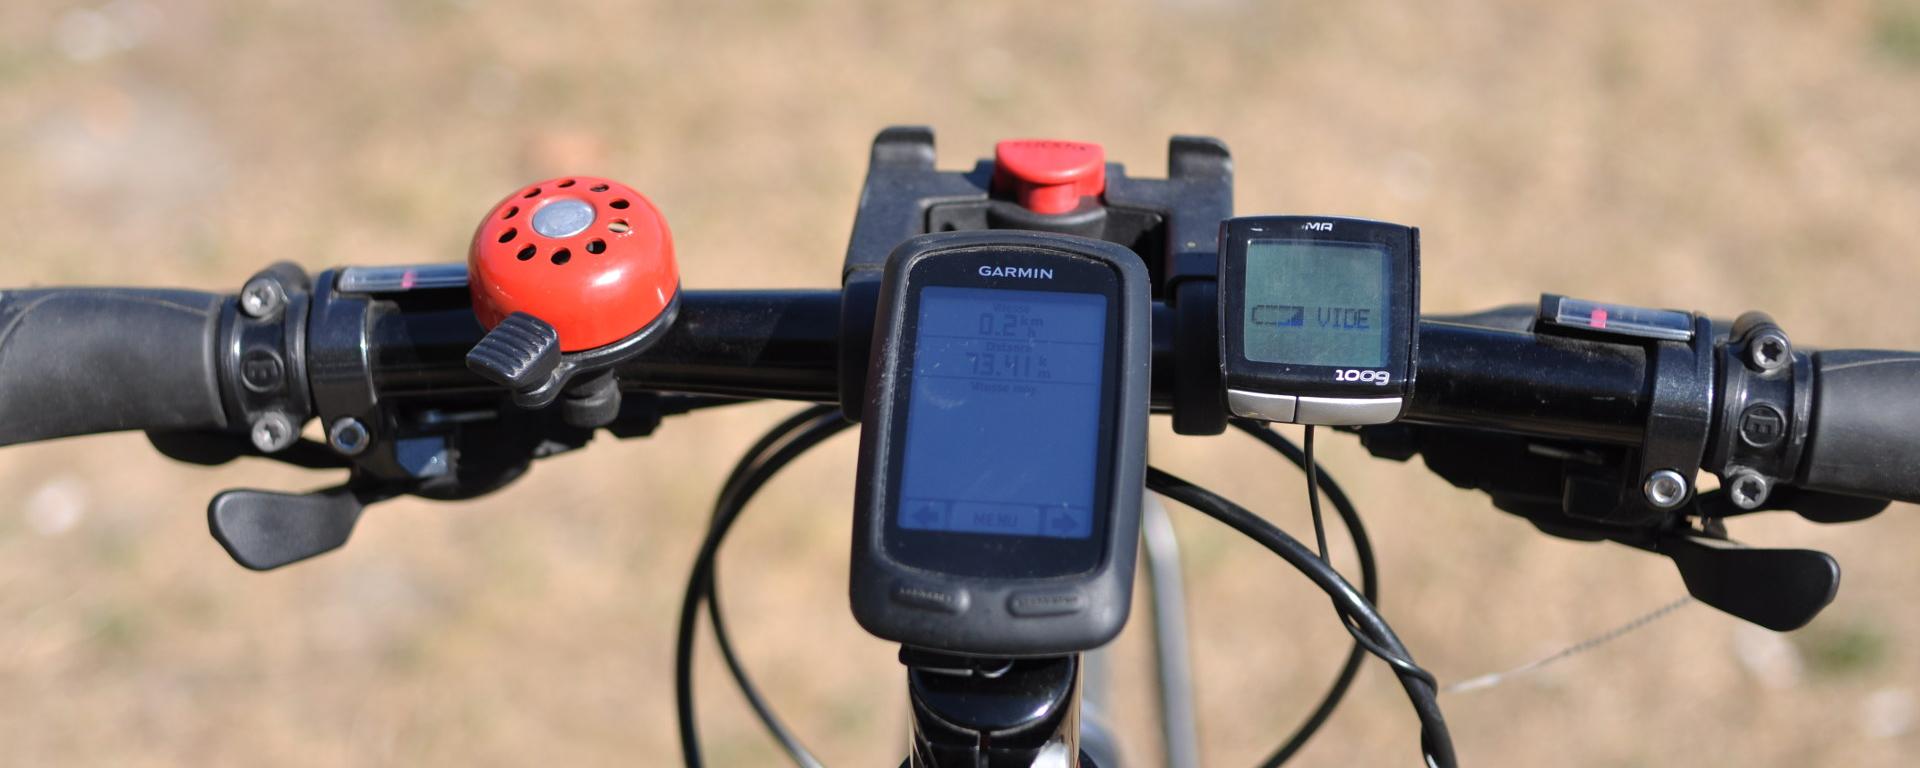 Les GPS pour vélo Garmin sont-ils toujours les meilleurs ?